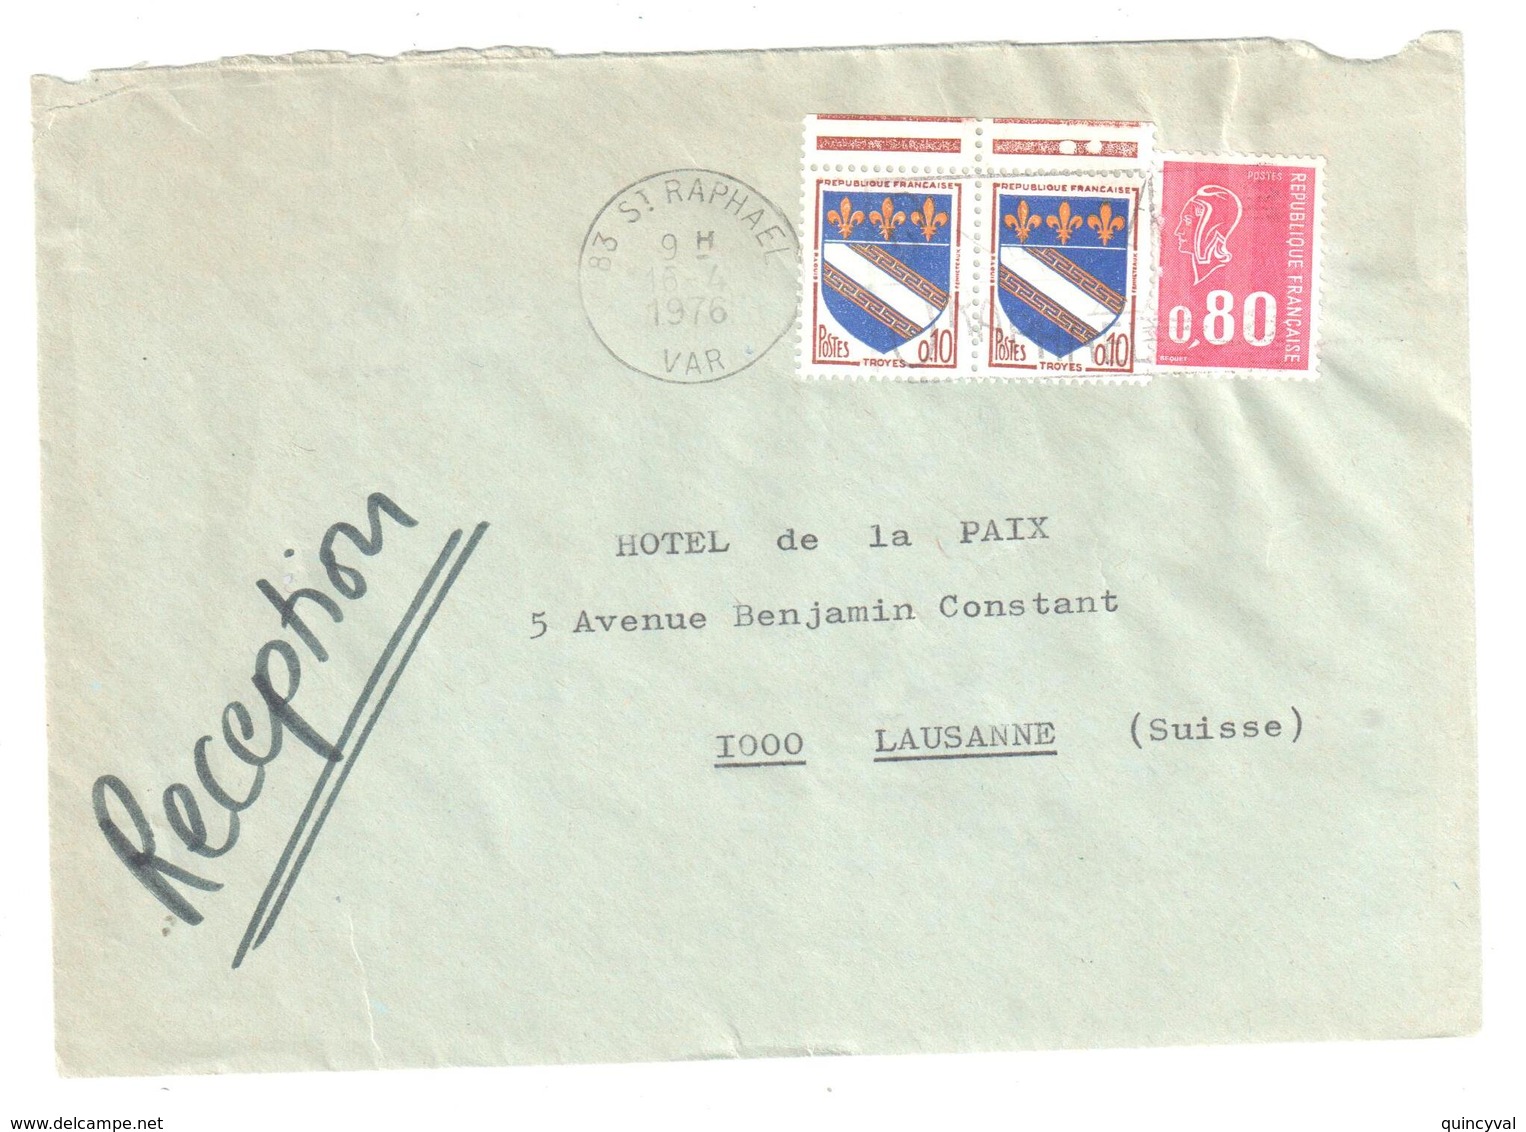 St RAPHAEL Var Lettre Destination Suisse Tarif Particulier Du 1 1 1976 80C Bequet 10c Troyes Yv 1353 1816 Dest Lausanne - Covers & Documents